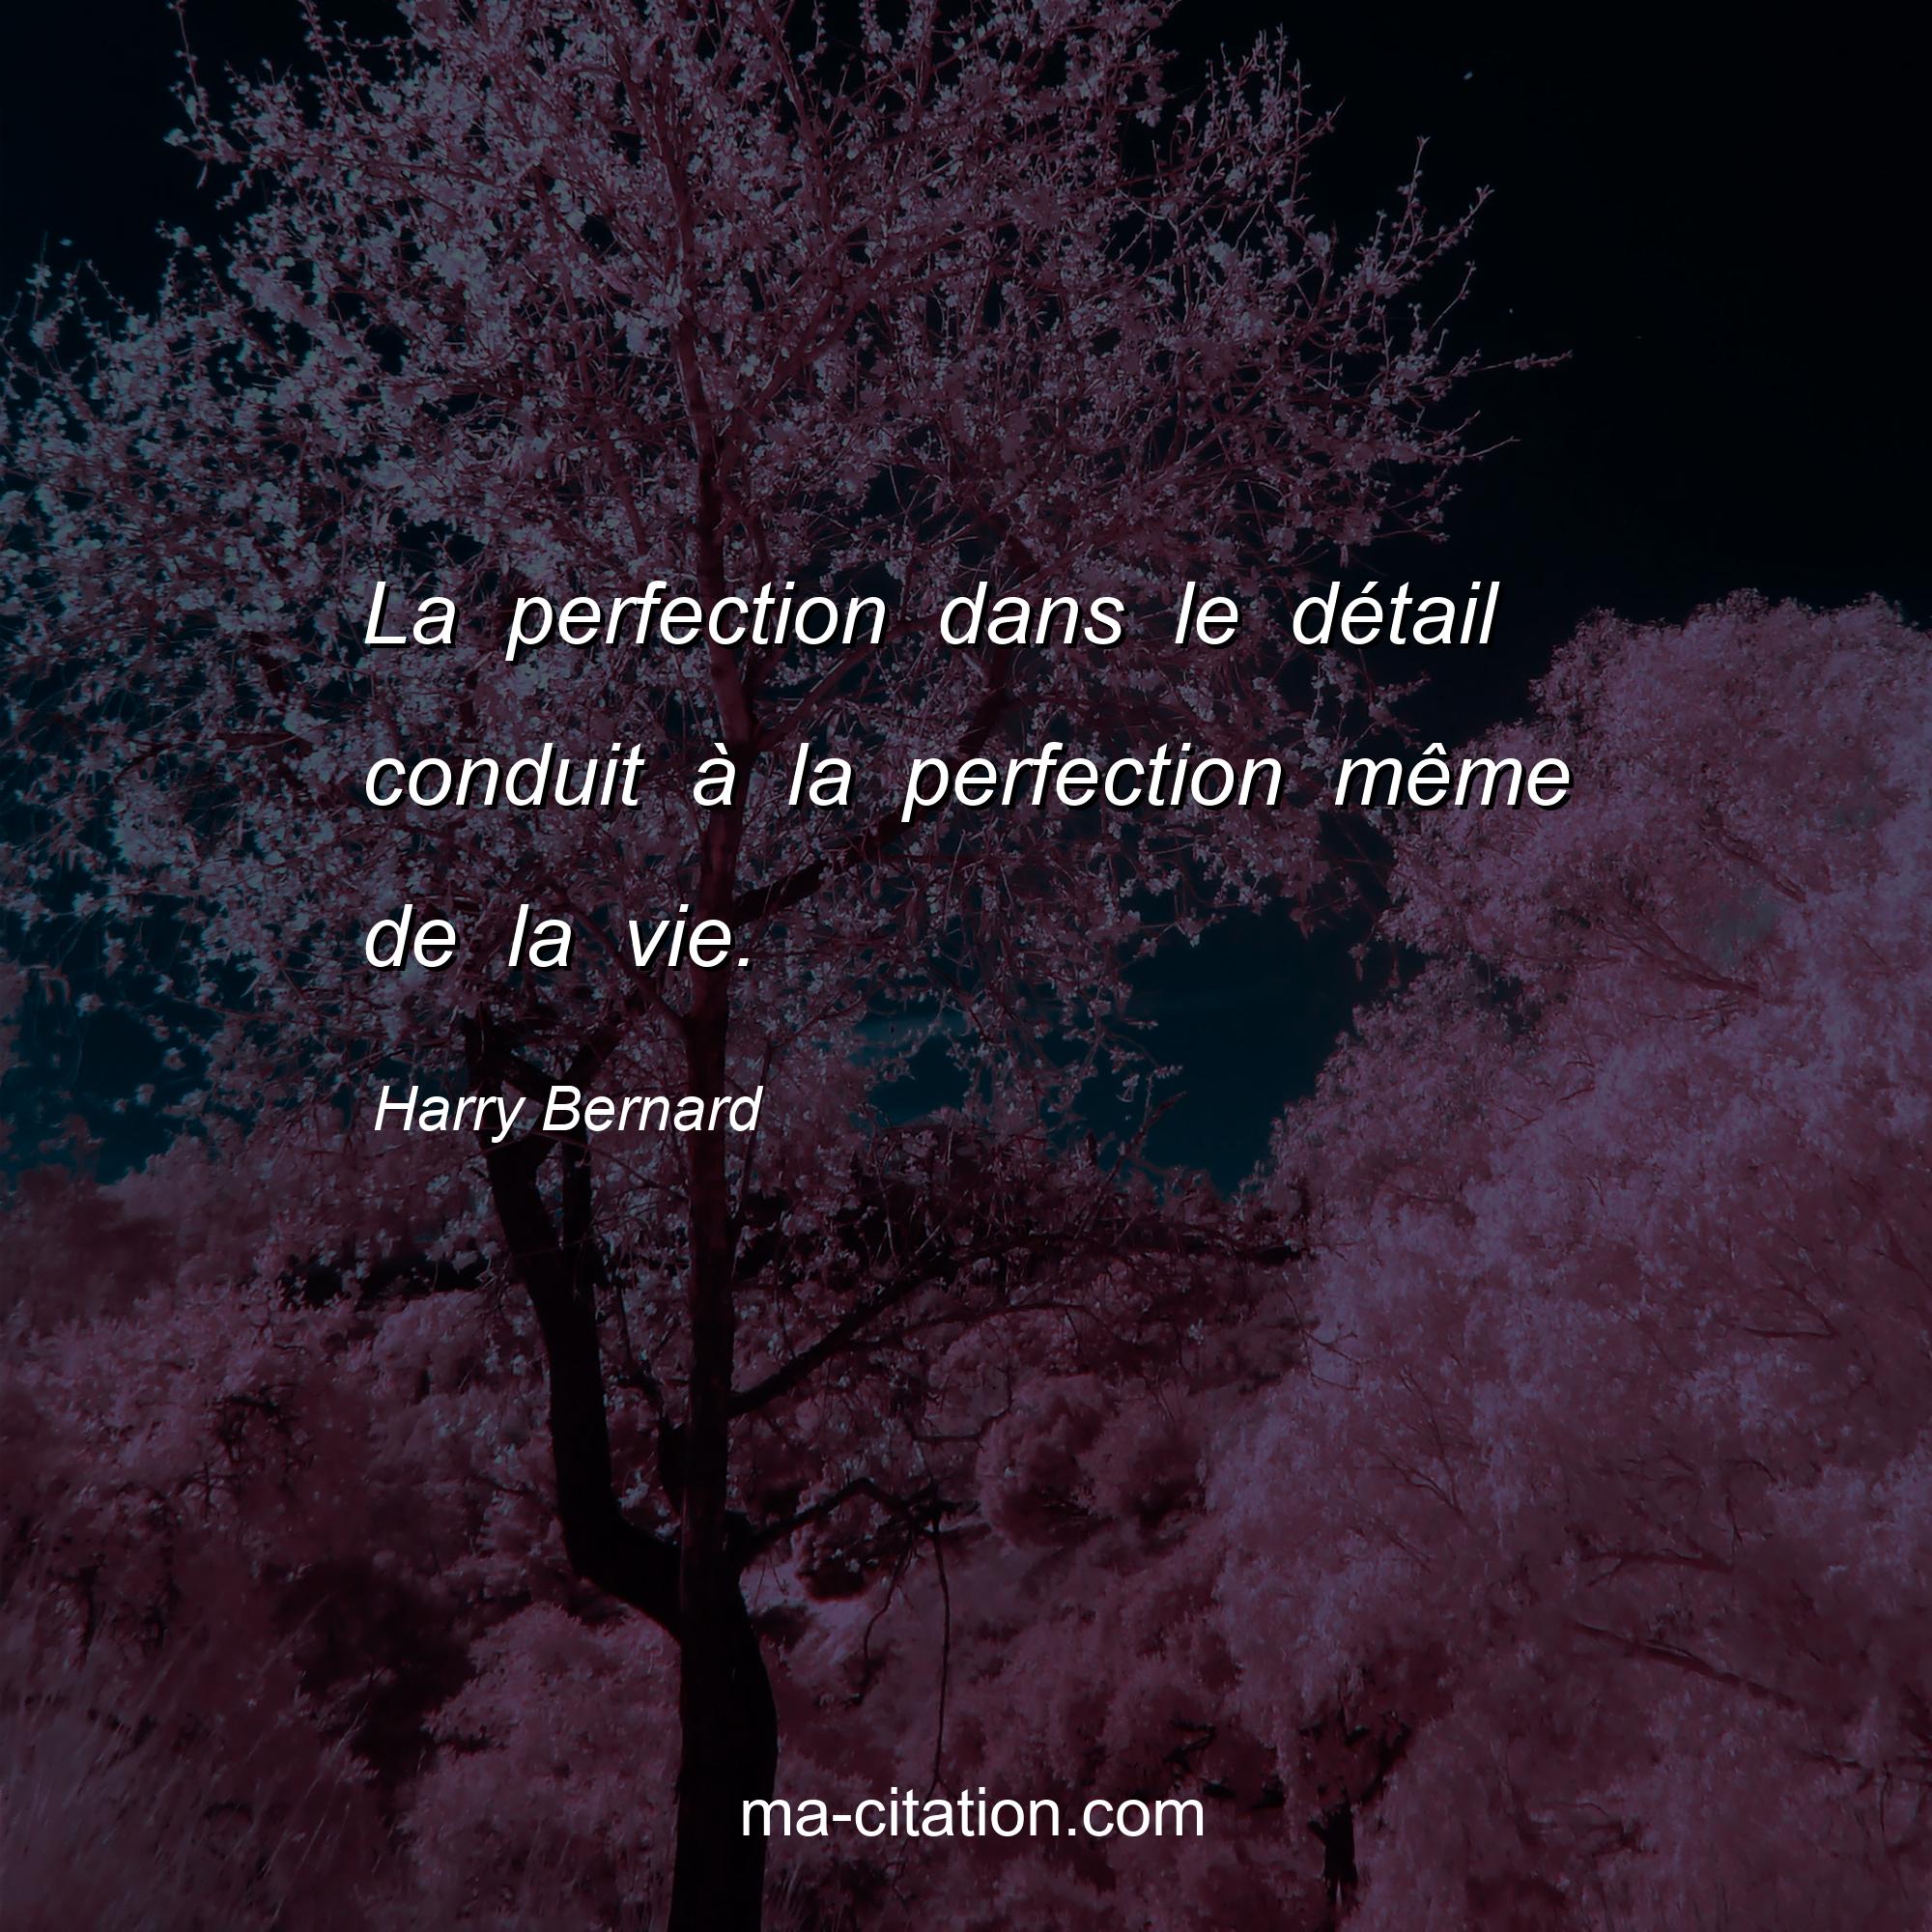 Harry Bernard : La perfection dans le détail conduit à la perfection même de la vie.